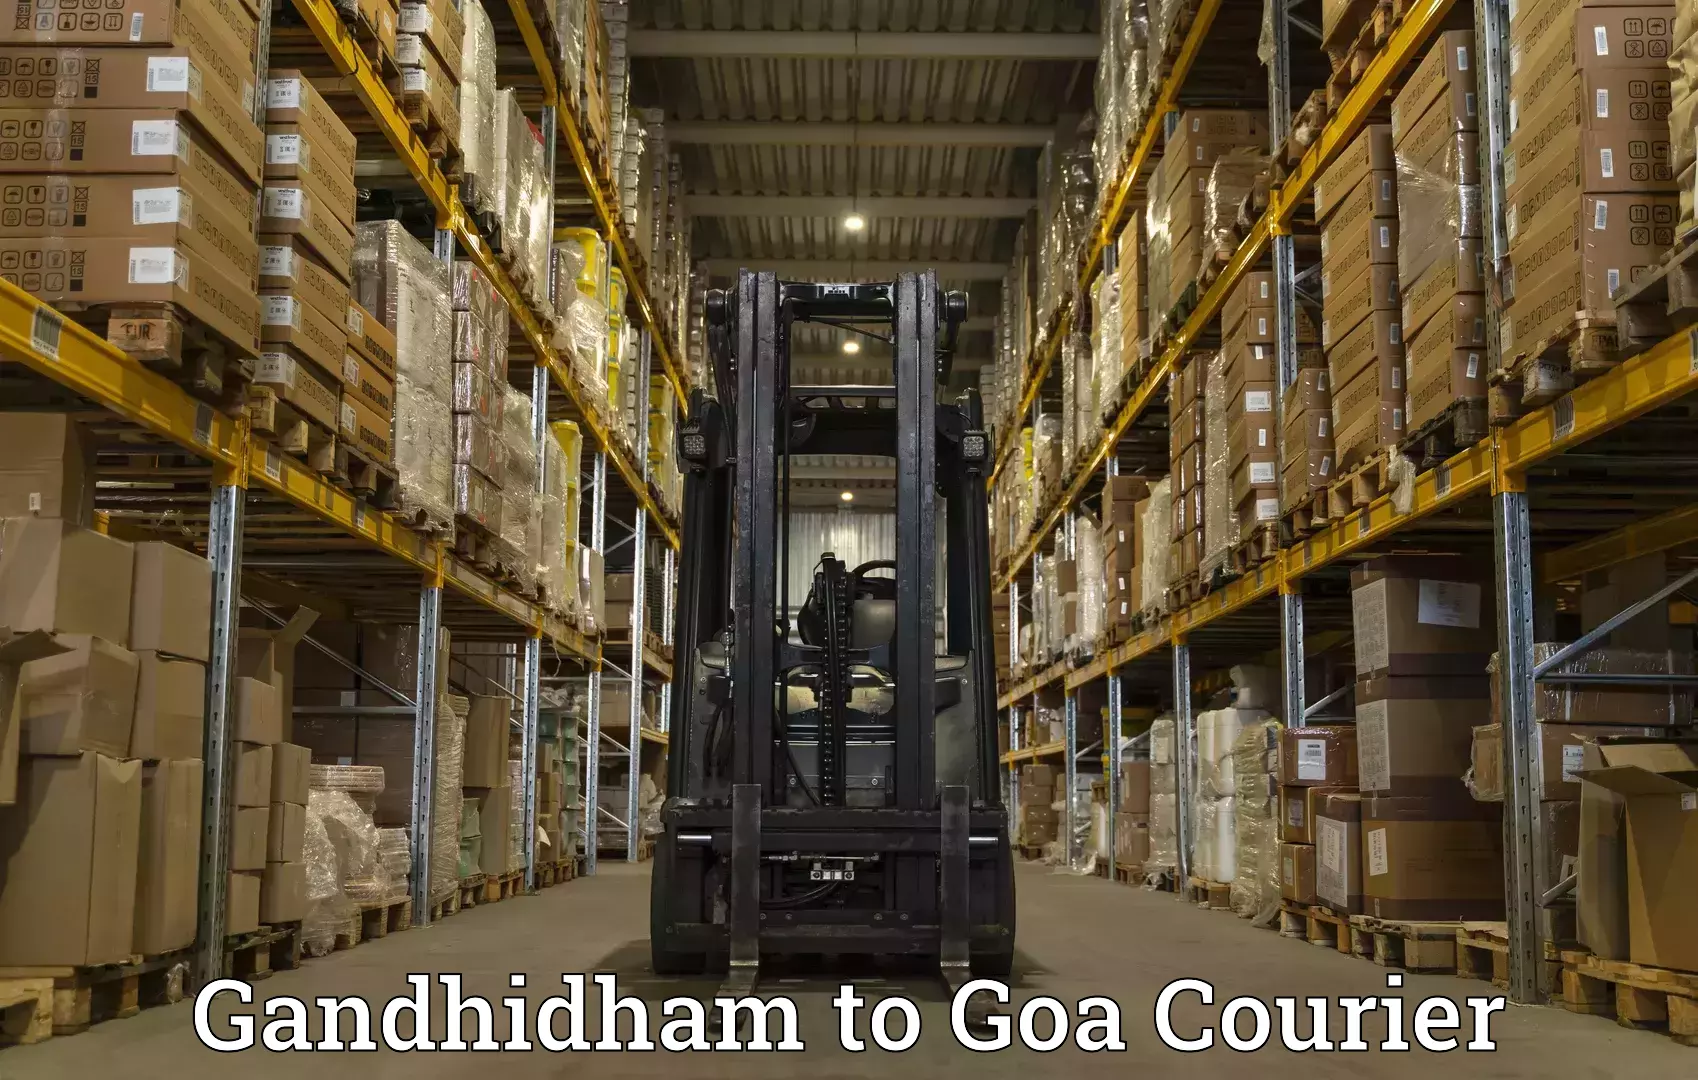 Courier service comparison Gandhidham to Vasco da Gama